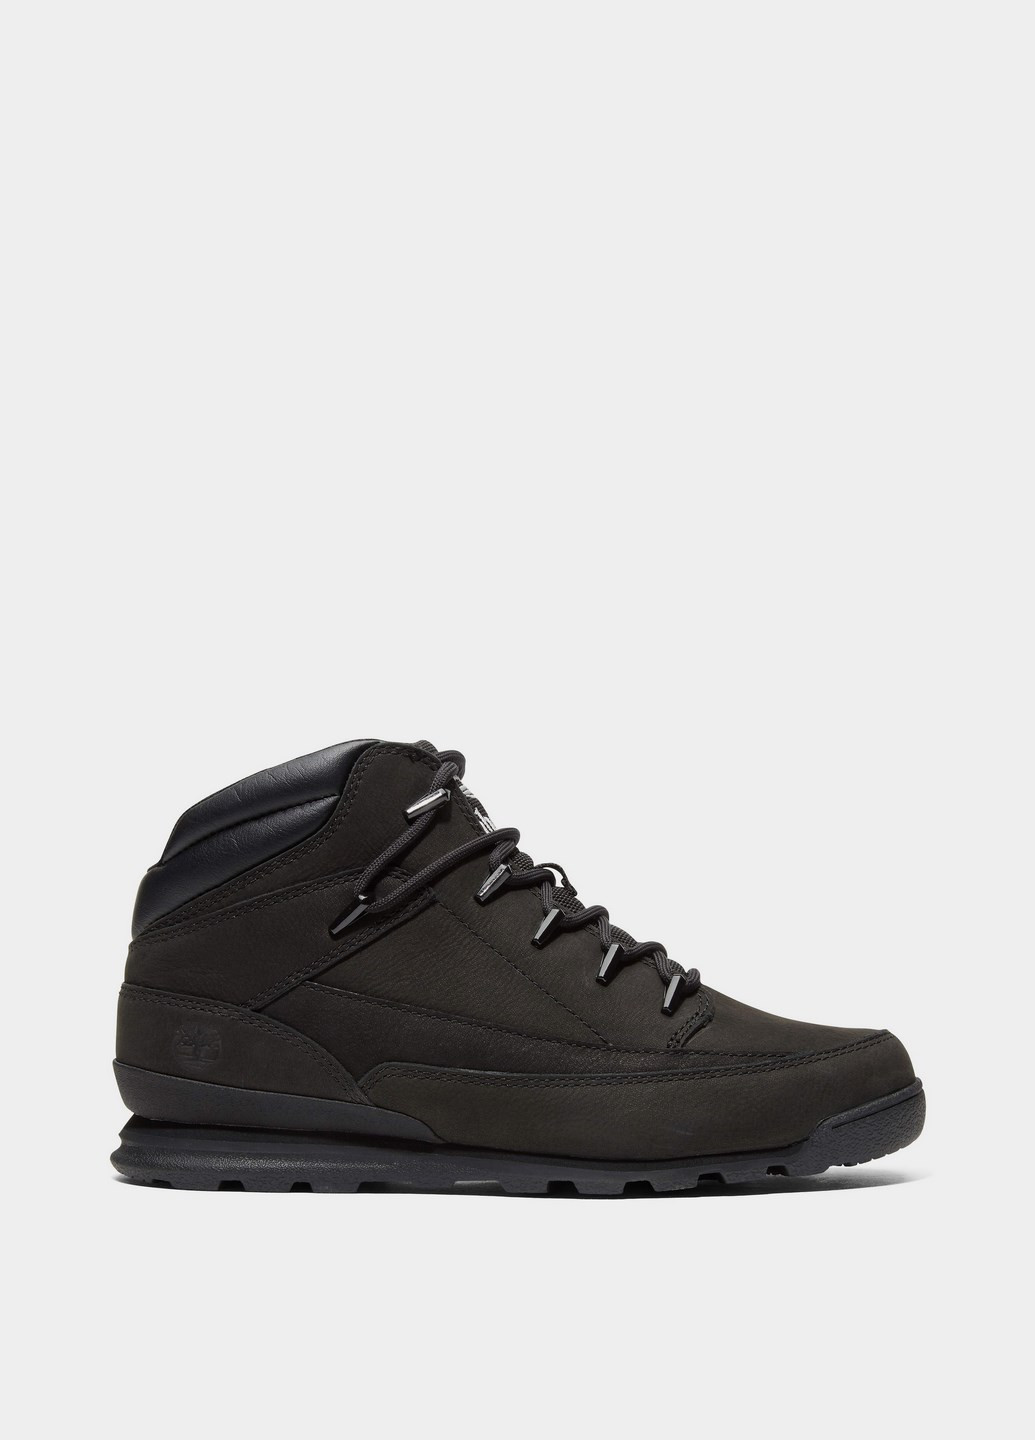 Черные зимние мужские ботинки tb0a2ad1015 Timberland